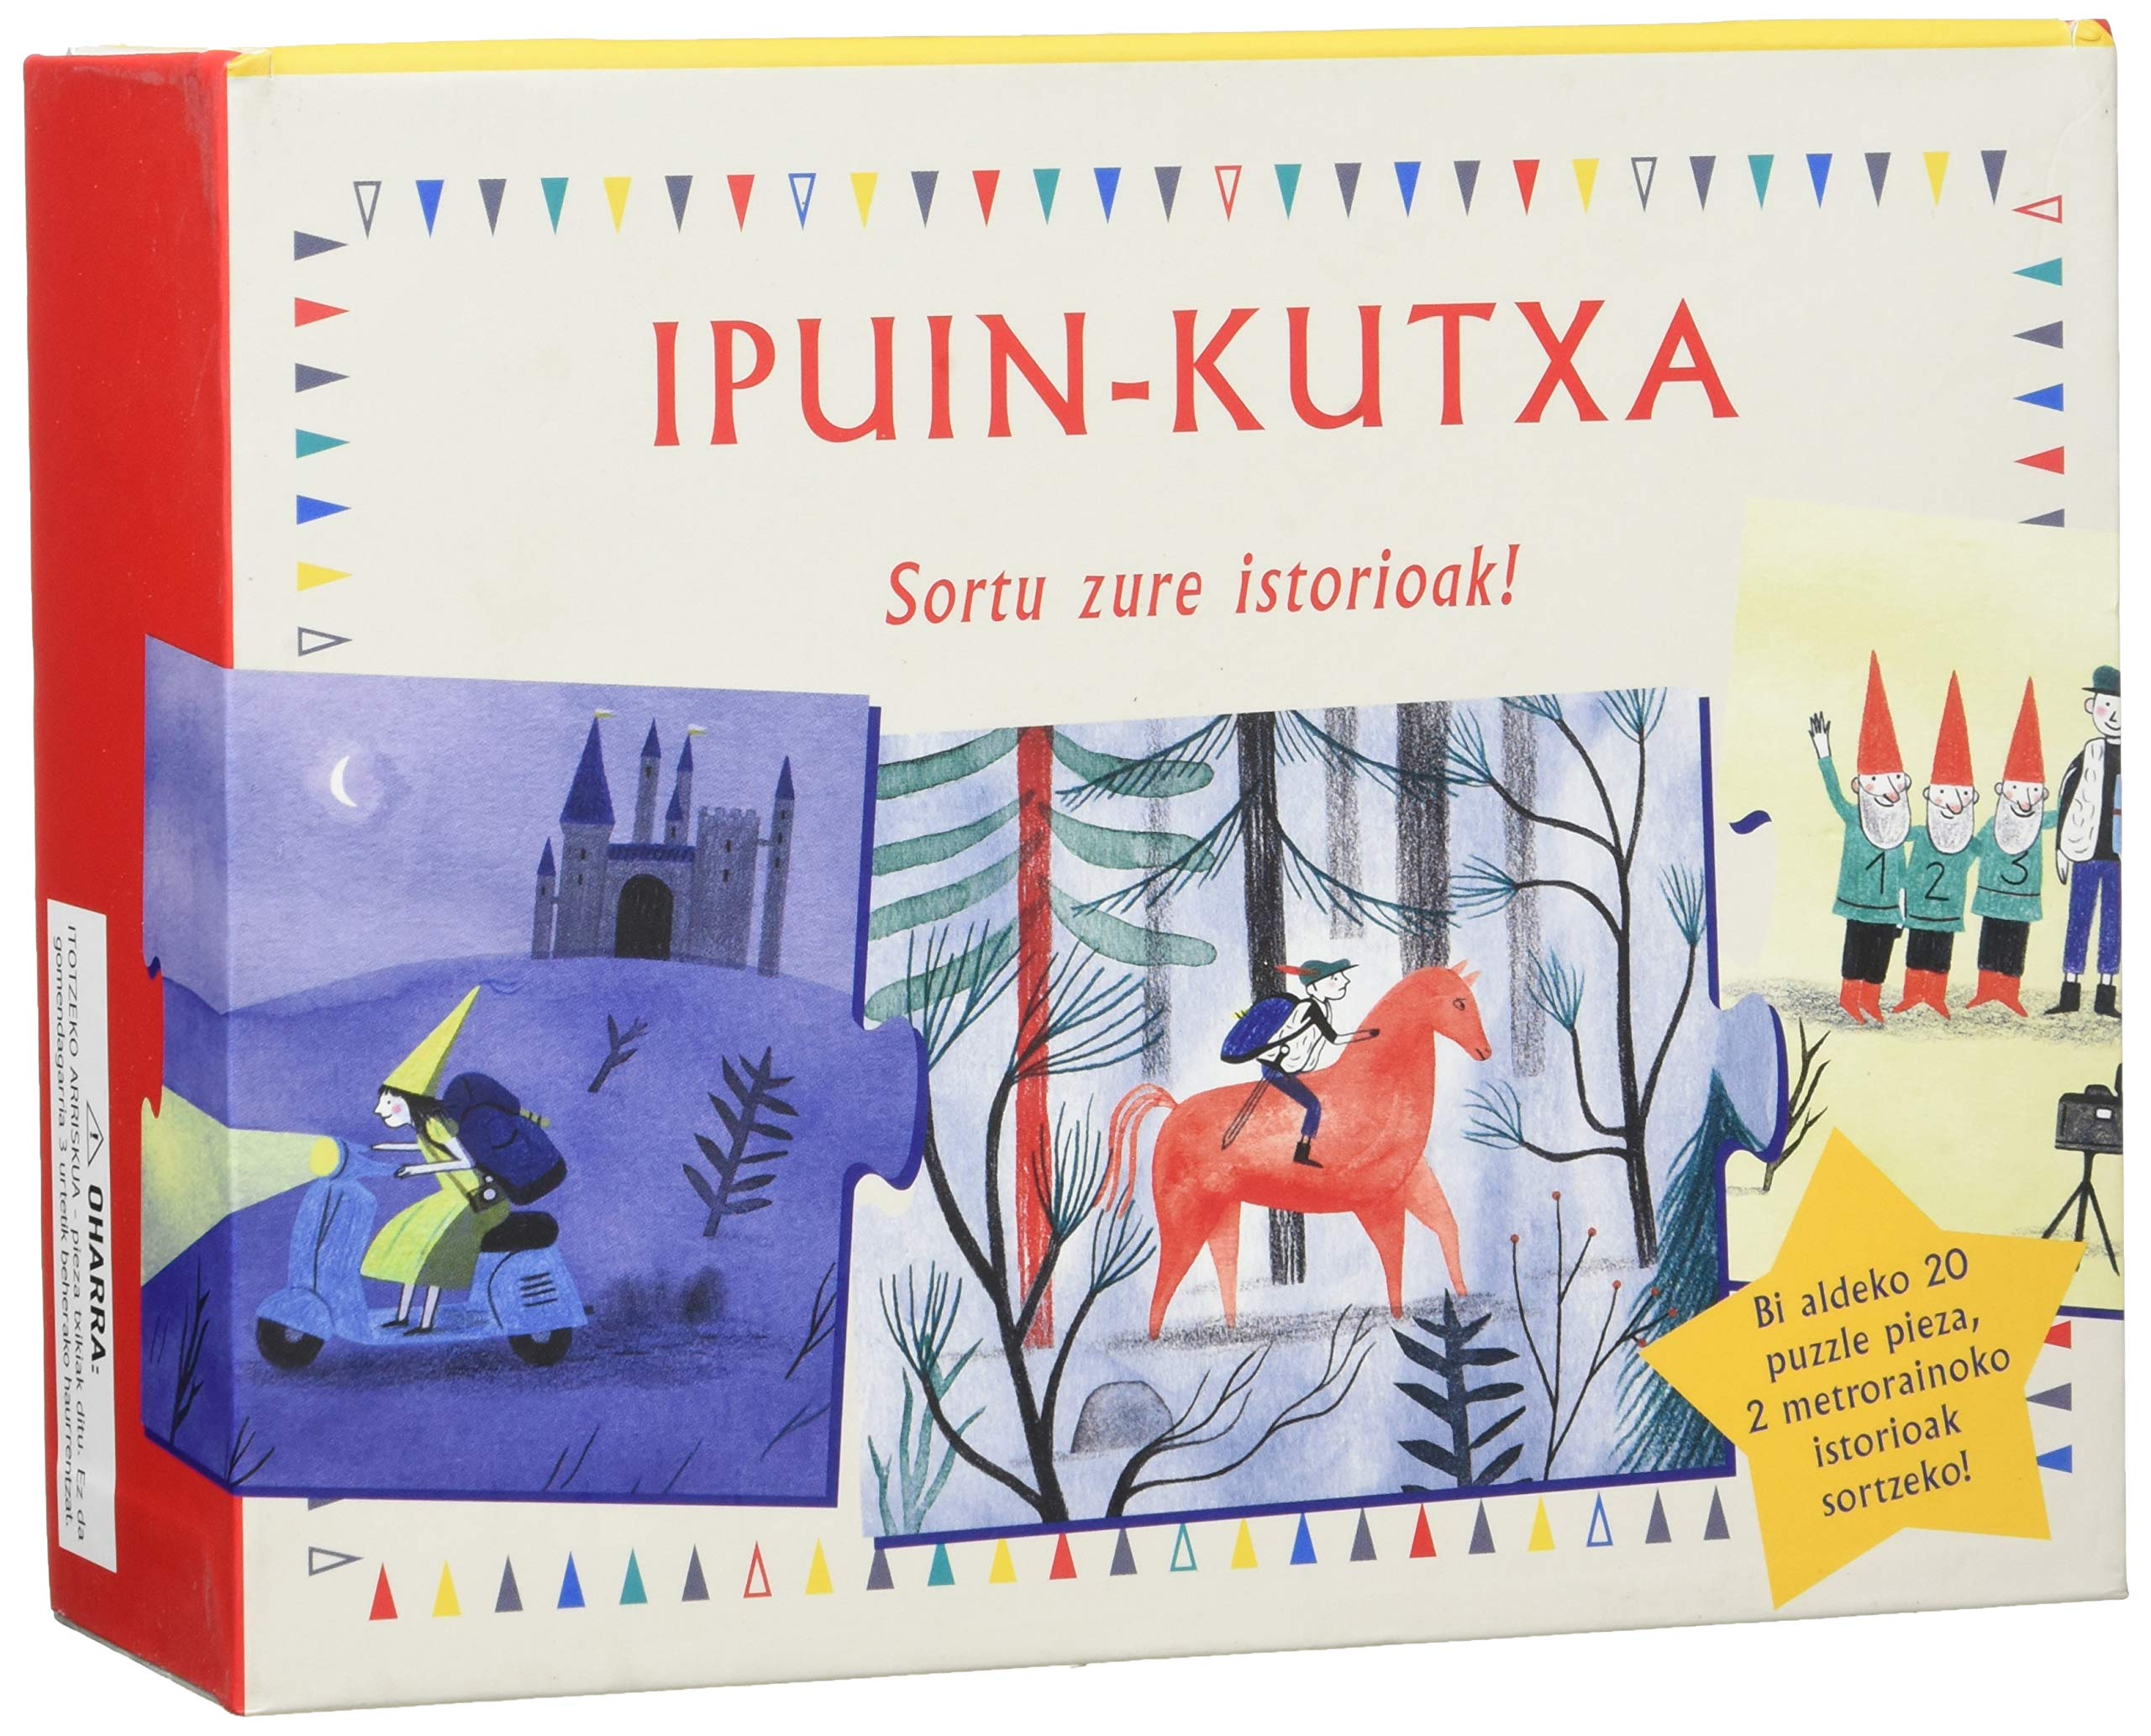 Ipuin-Kutxa